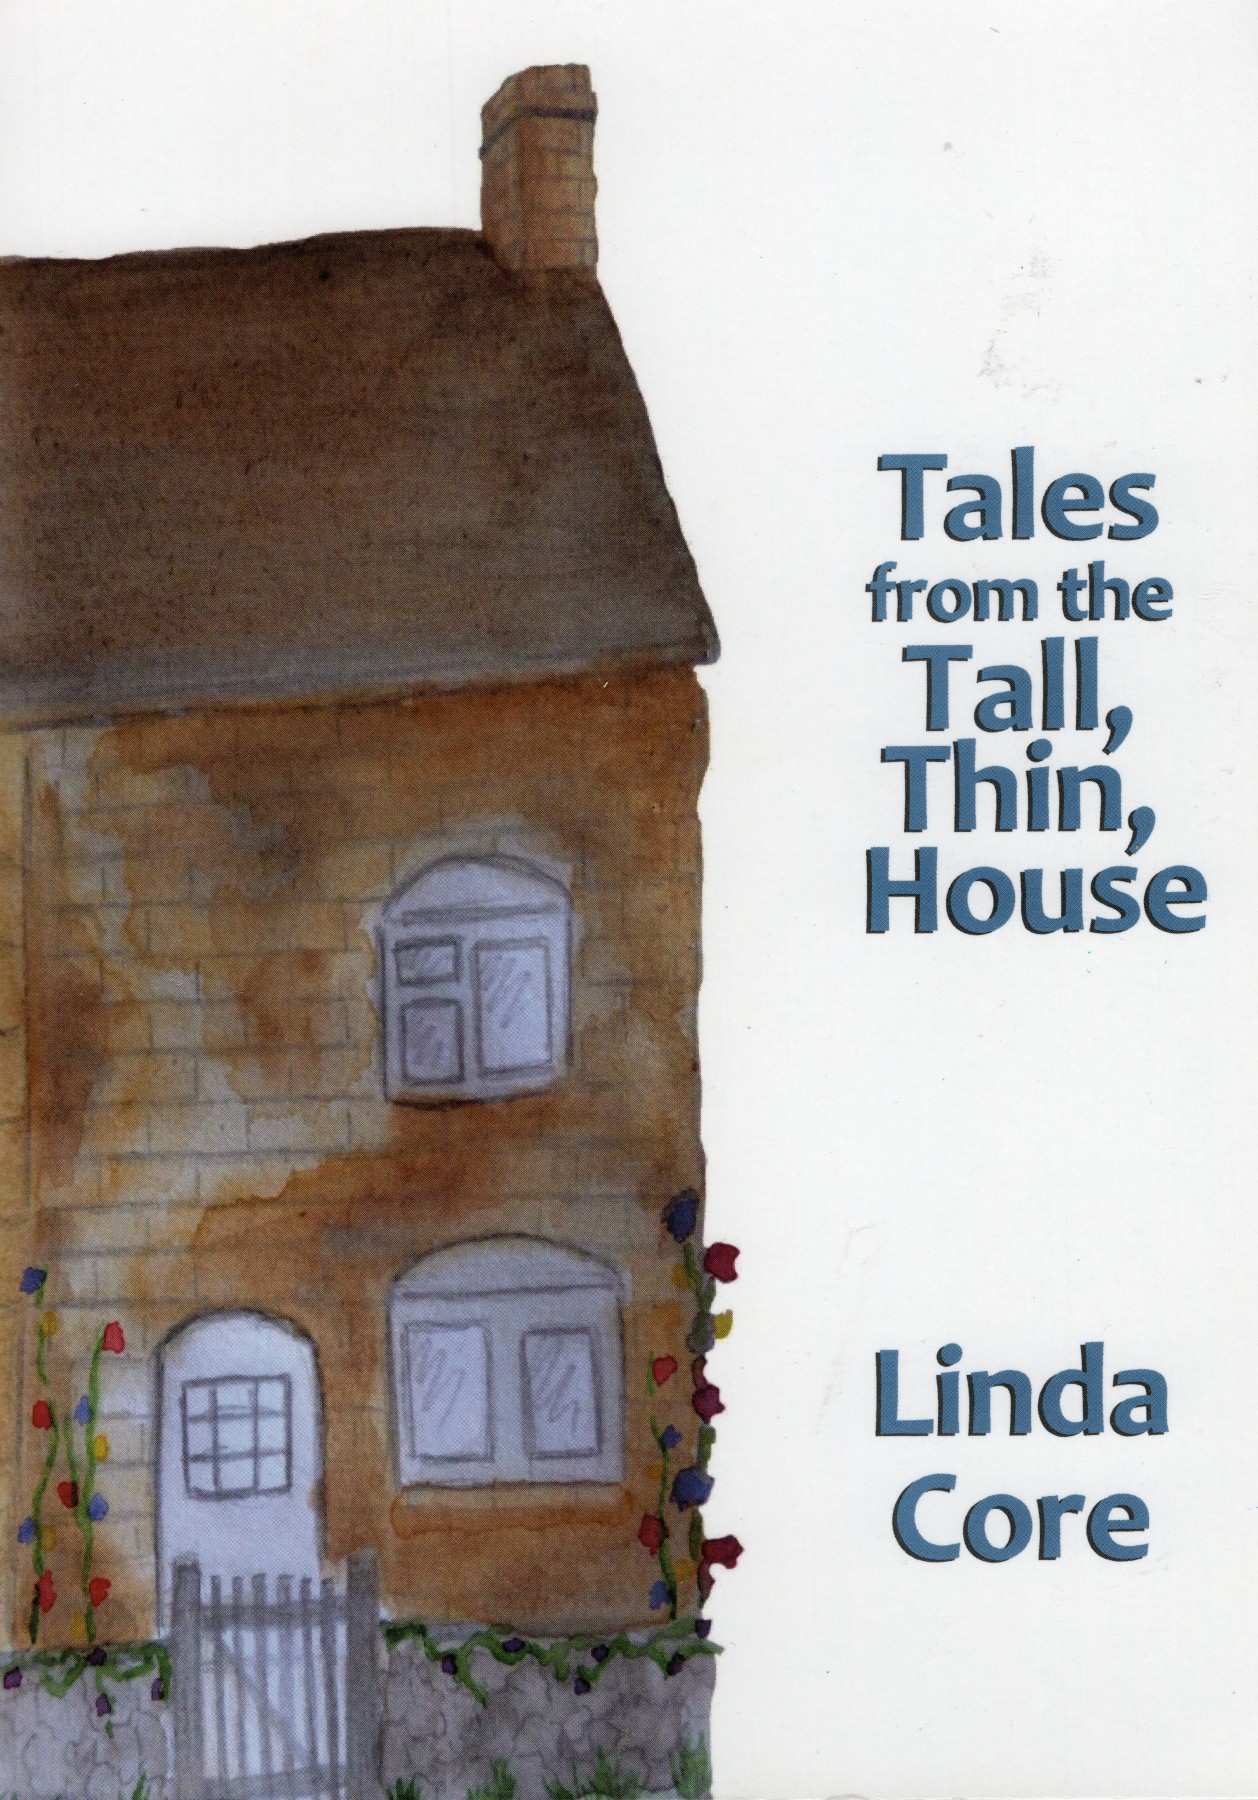 Linda Core's book